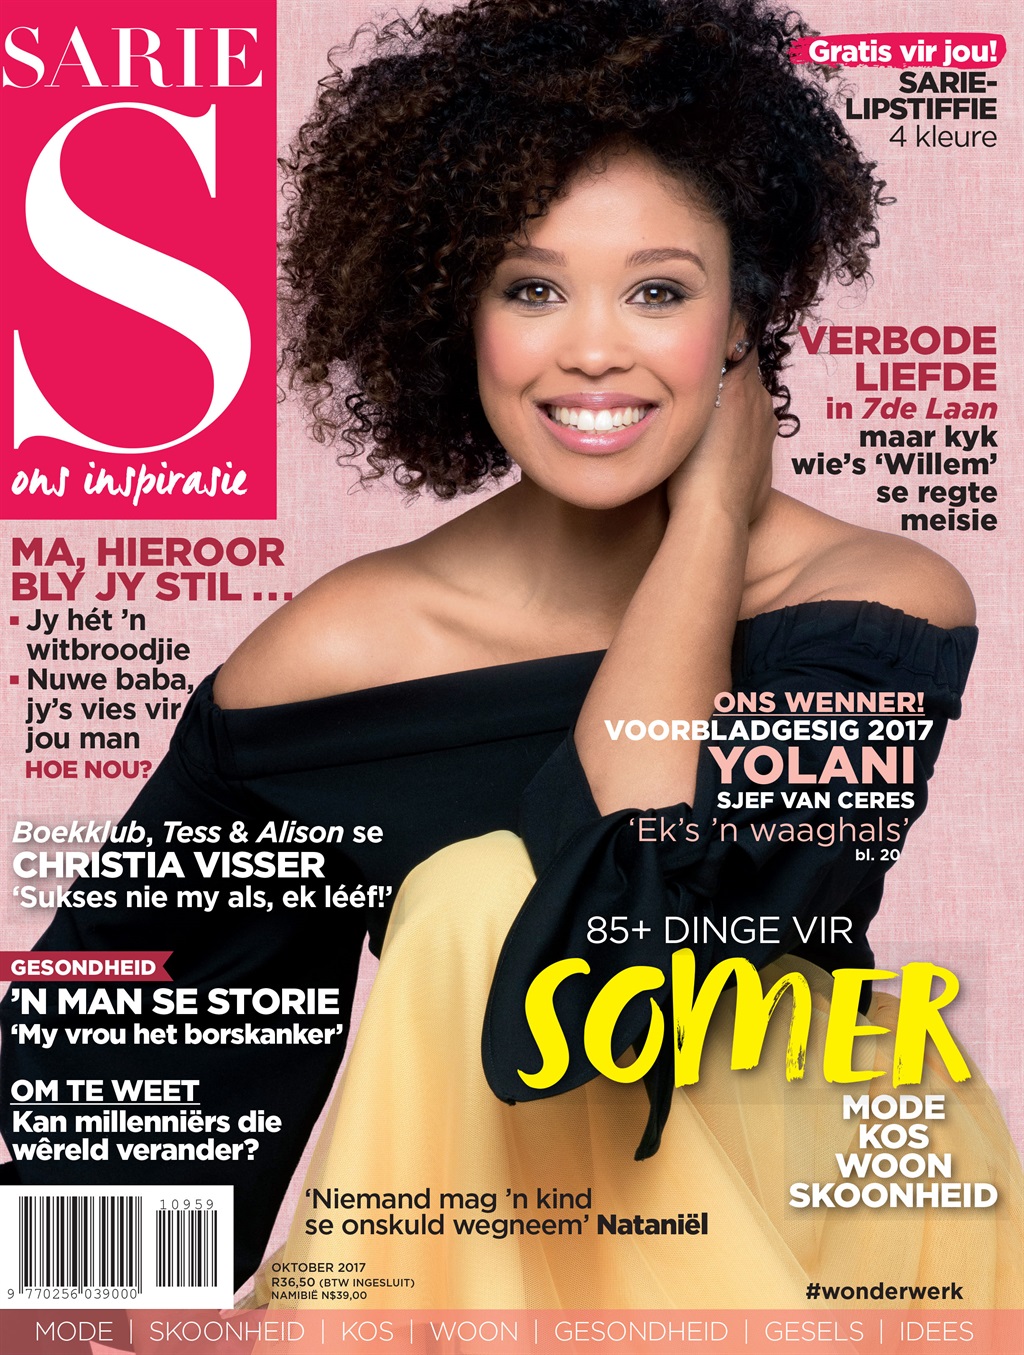 Yolani op die voorblad van SARIE in 2017.